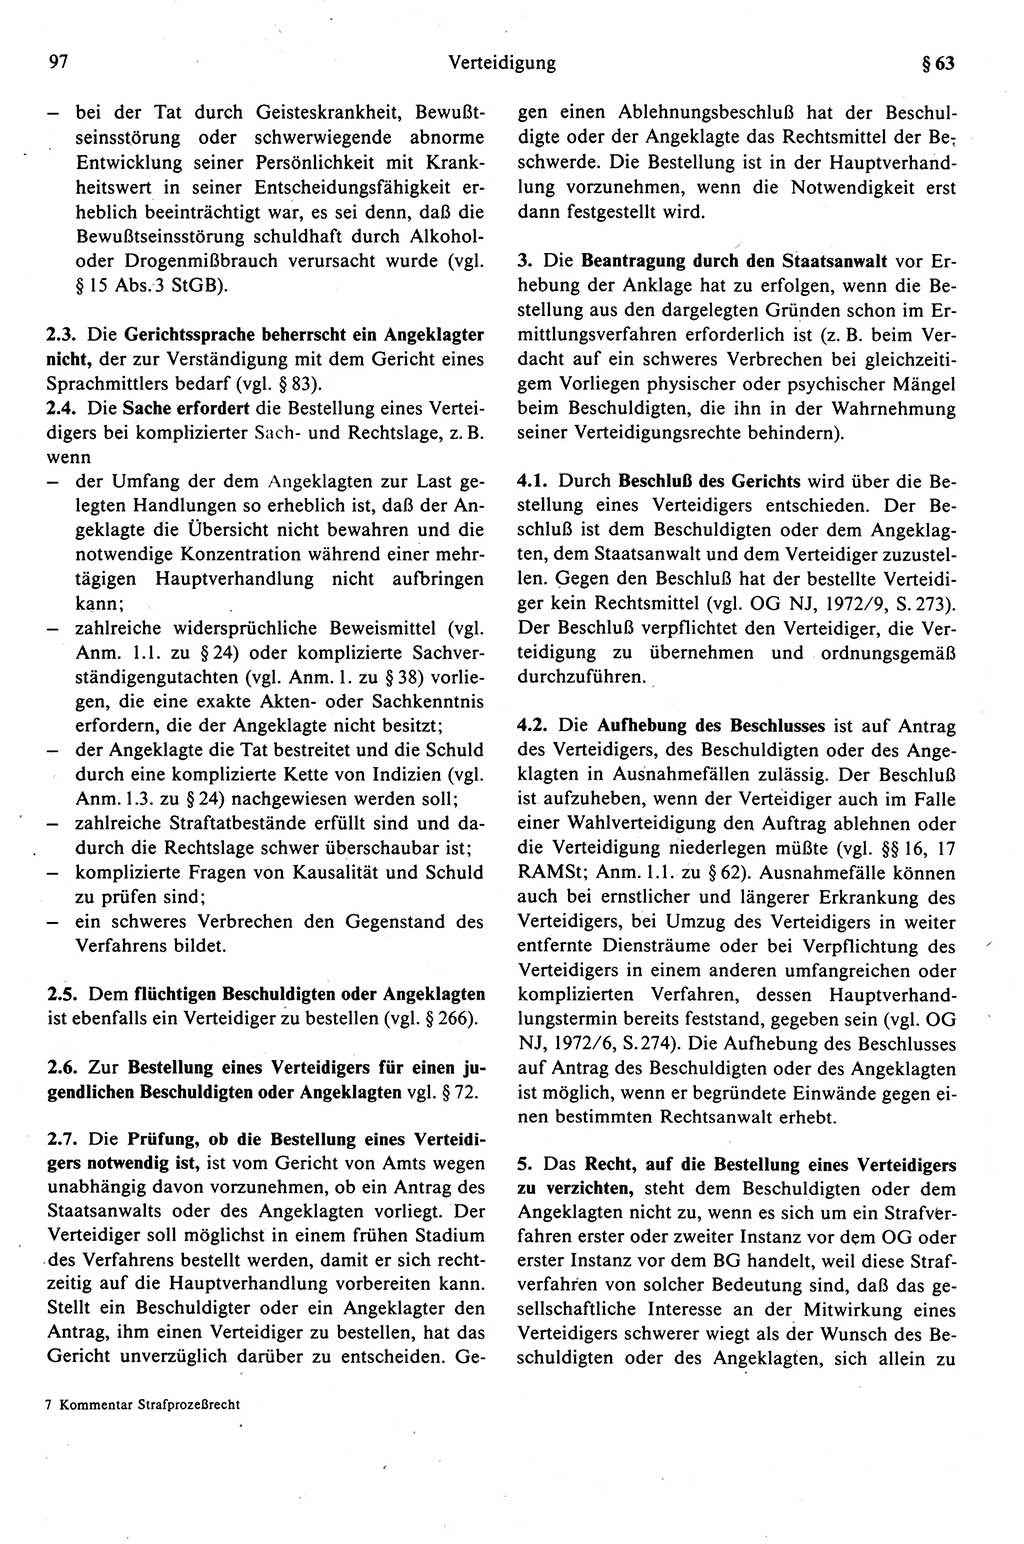 Strafprozeßrecht der DDR (Deutsche Demokratische Republik), Kommentar zur Strafprozeßordnung (StPO) 1989, Seite 97 (Strafprozeßr. DDR Komm. StPO 1989, S. 97)